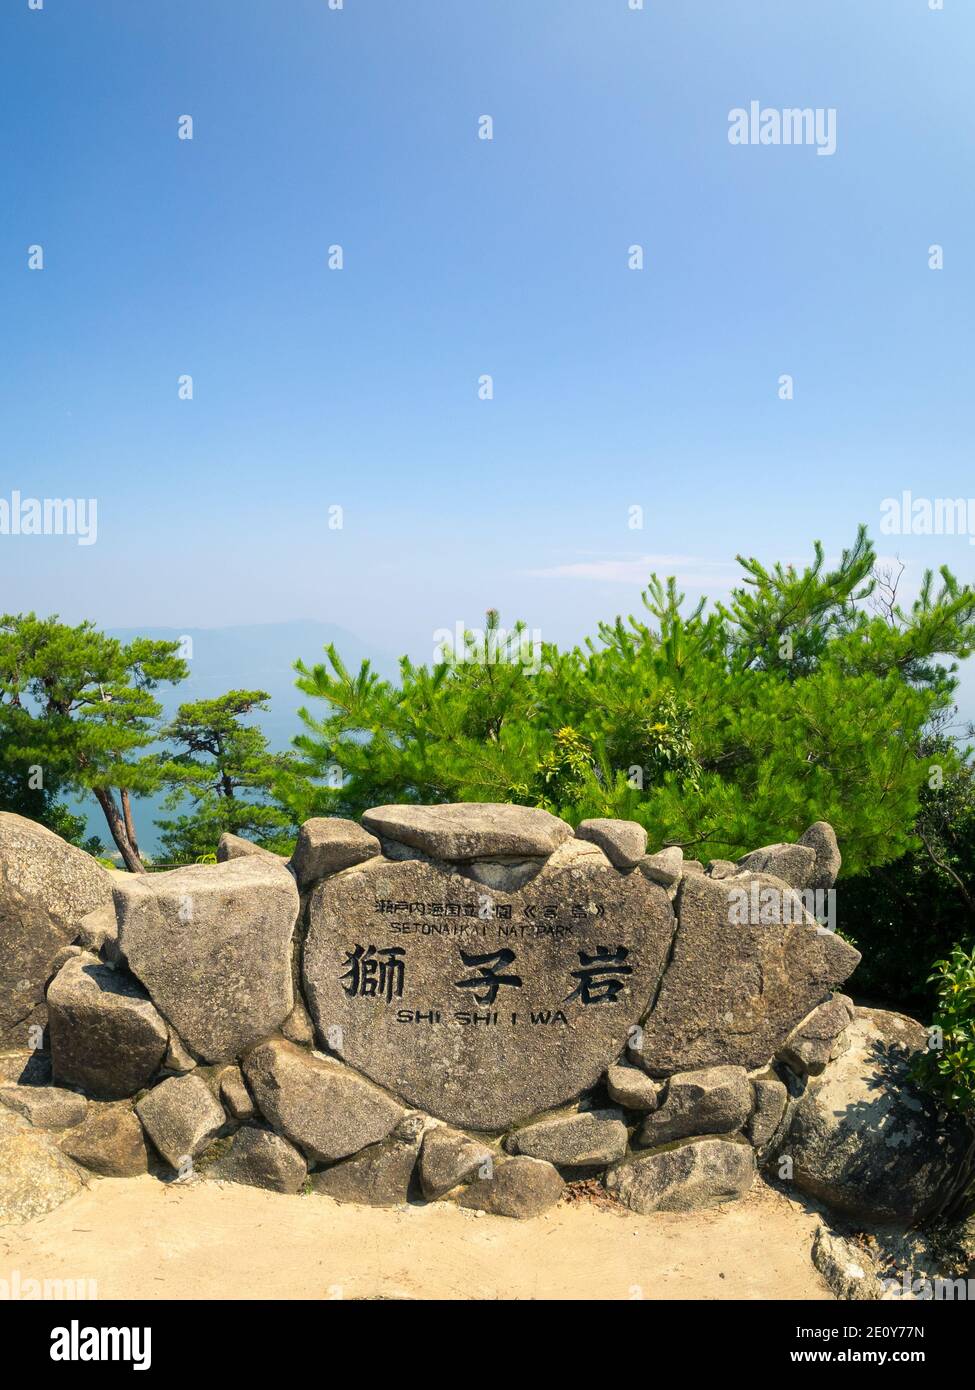 Eine Markierung für das Shishiiwa Observatorium und den Setonaikai Nationalpark auf dem Berg Mien, Miyajima Island (Itsukushima), Japan. Stockfoto